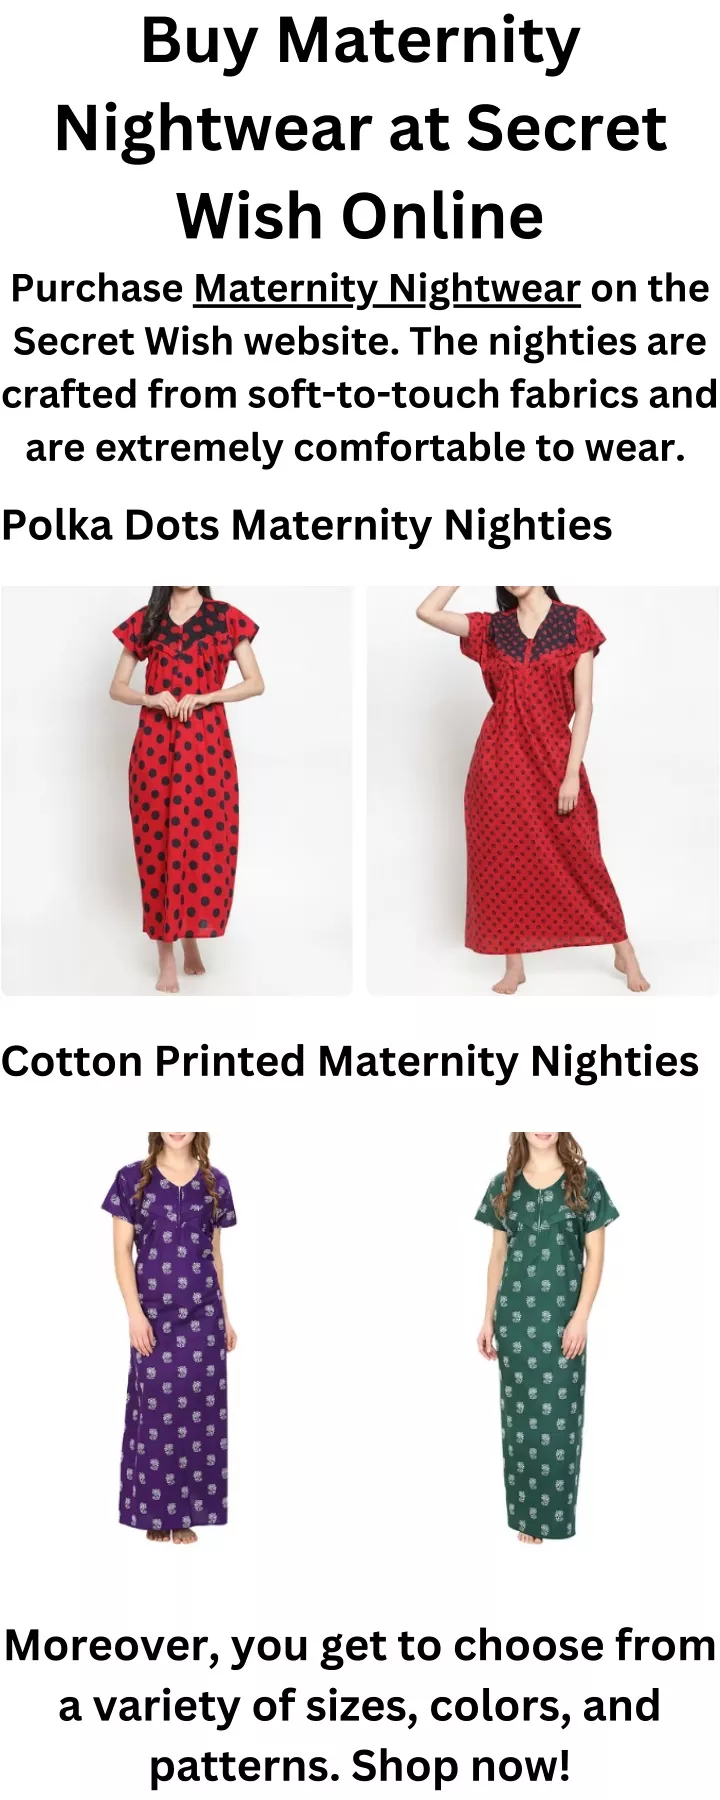 buy maternity nightwear at secret wish online